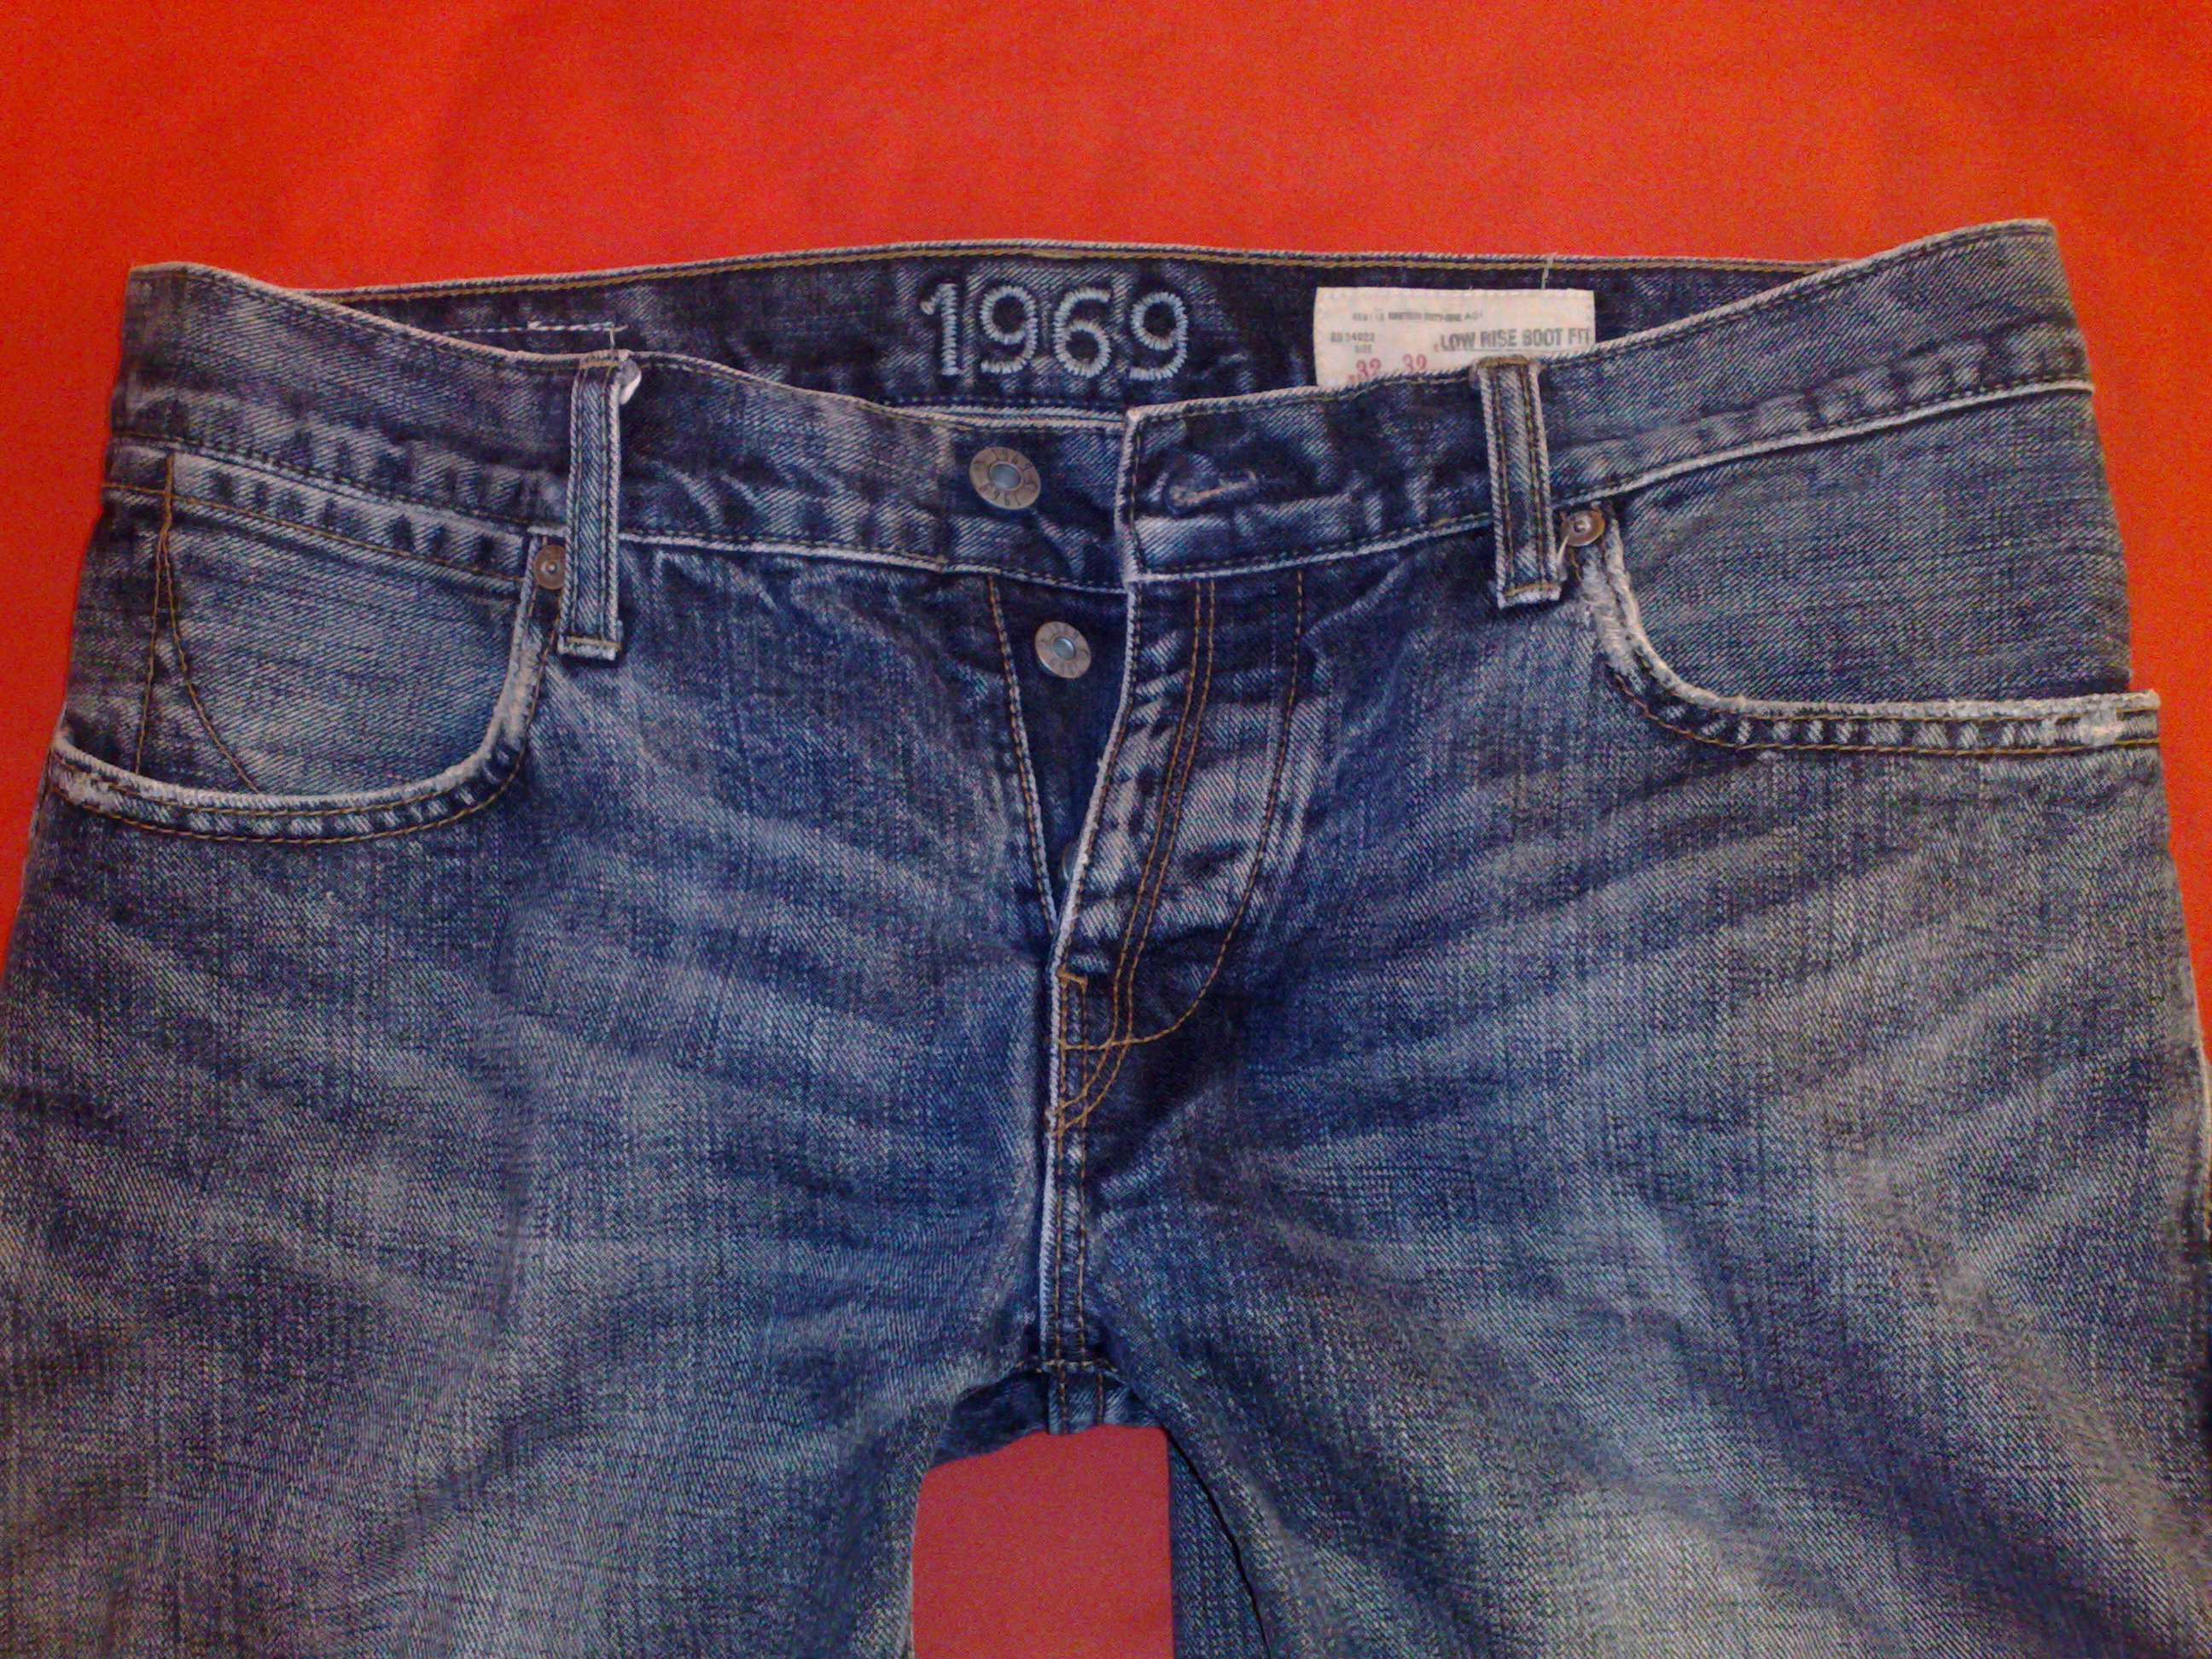 gap levis jeans